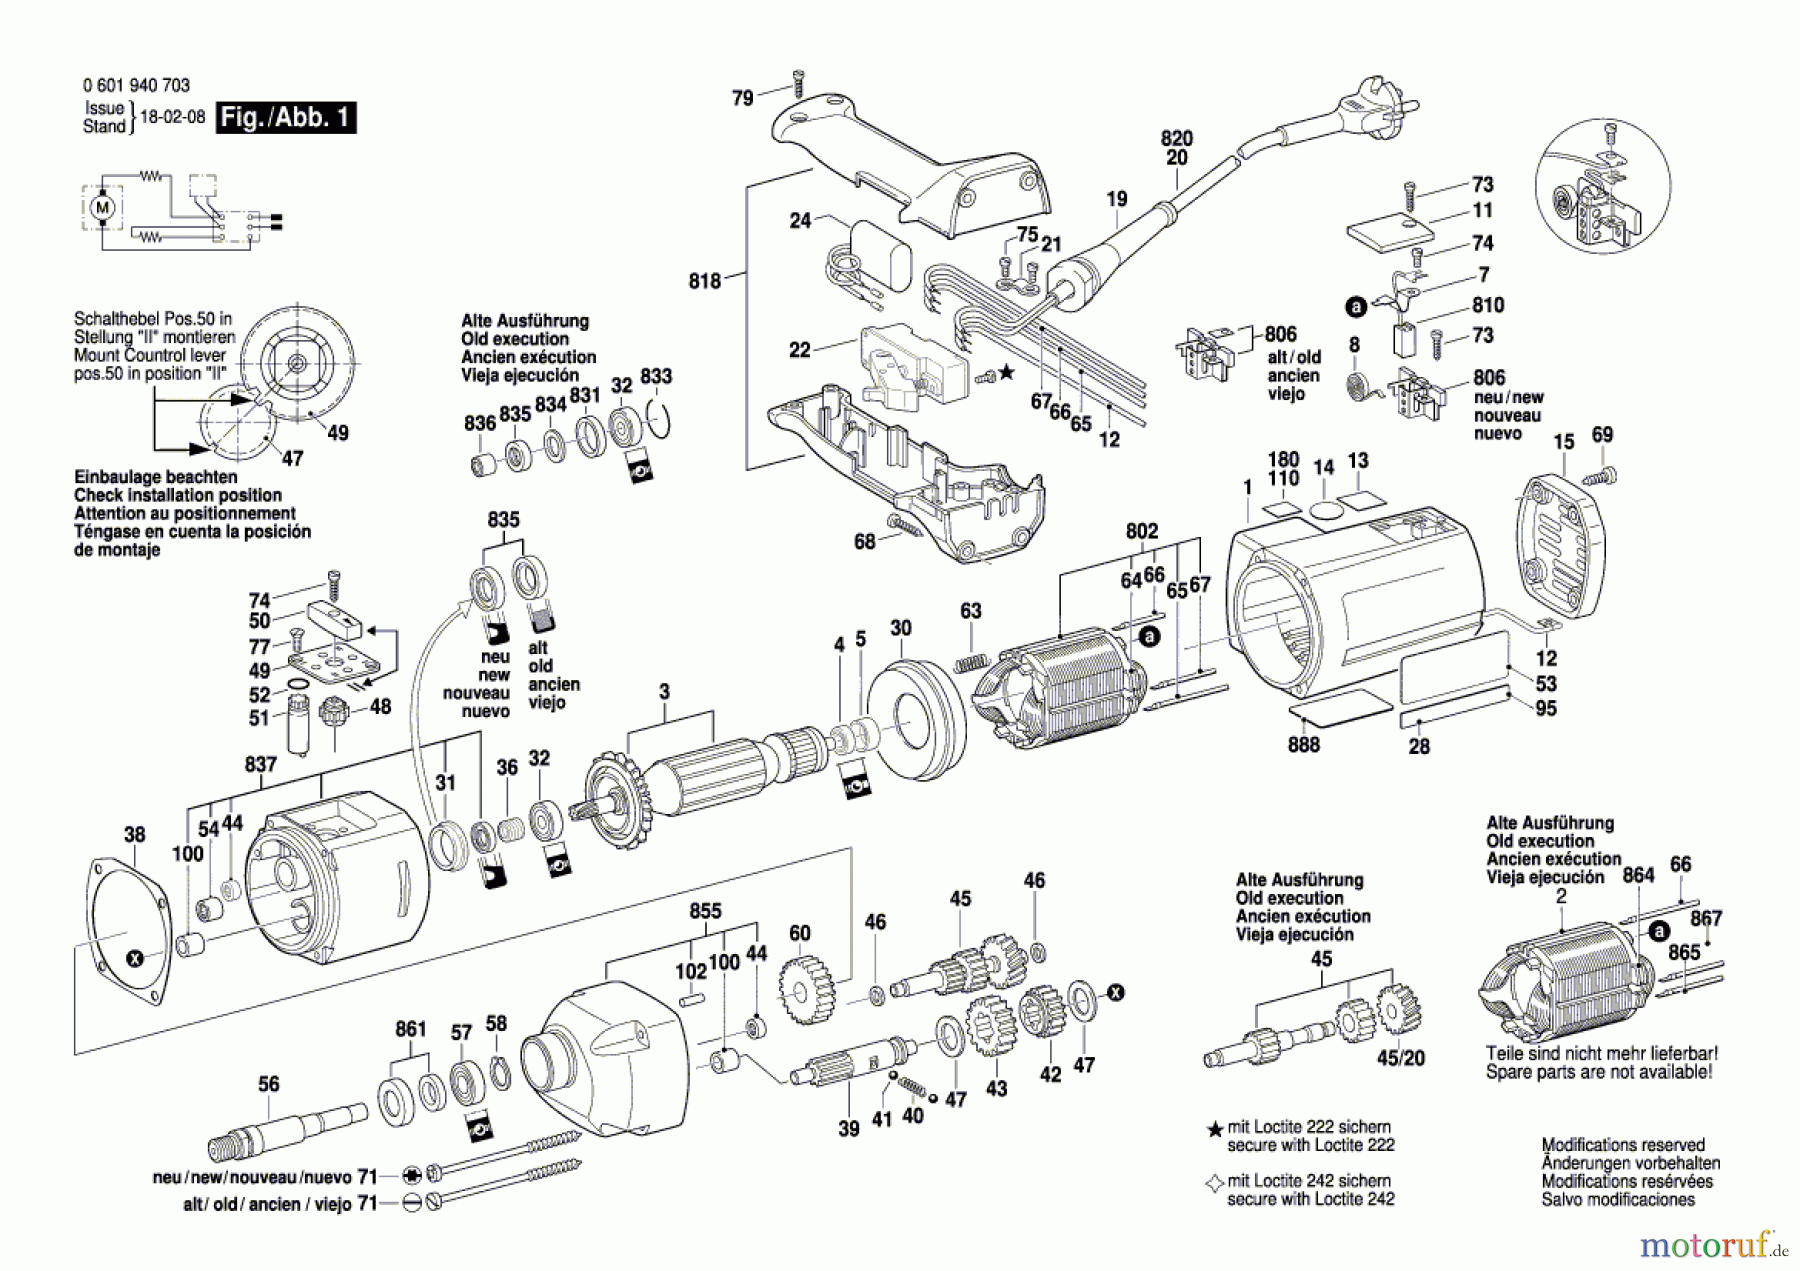  Bosch Werkzeug Rührwerk GRW 11 E Seite 1